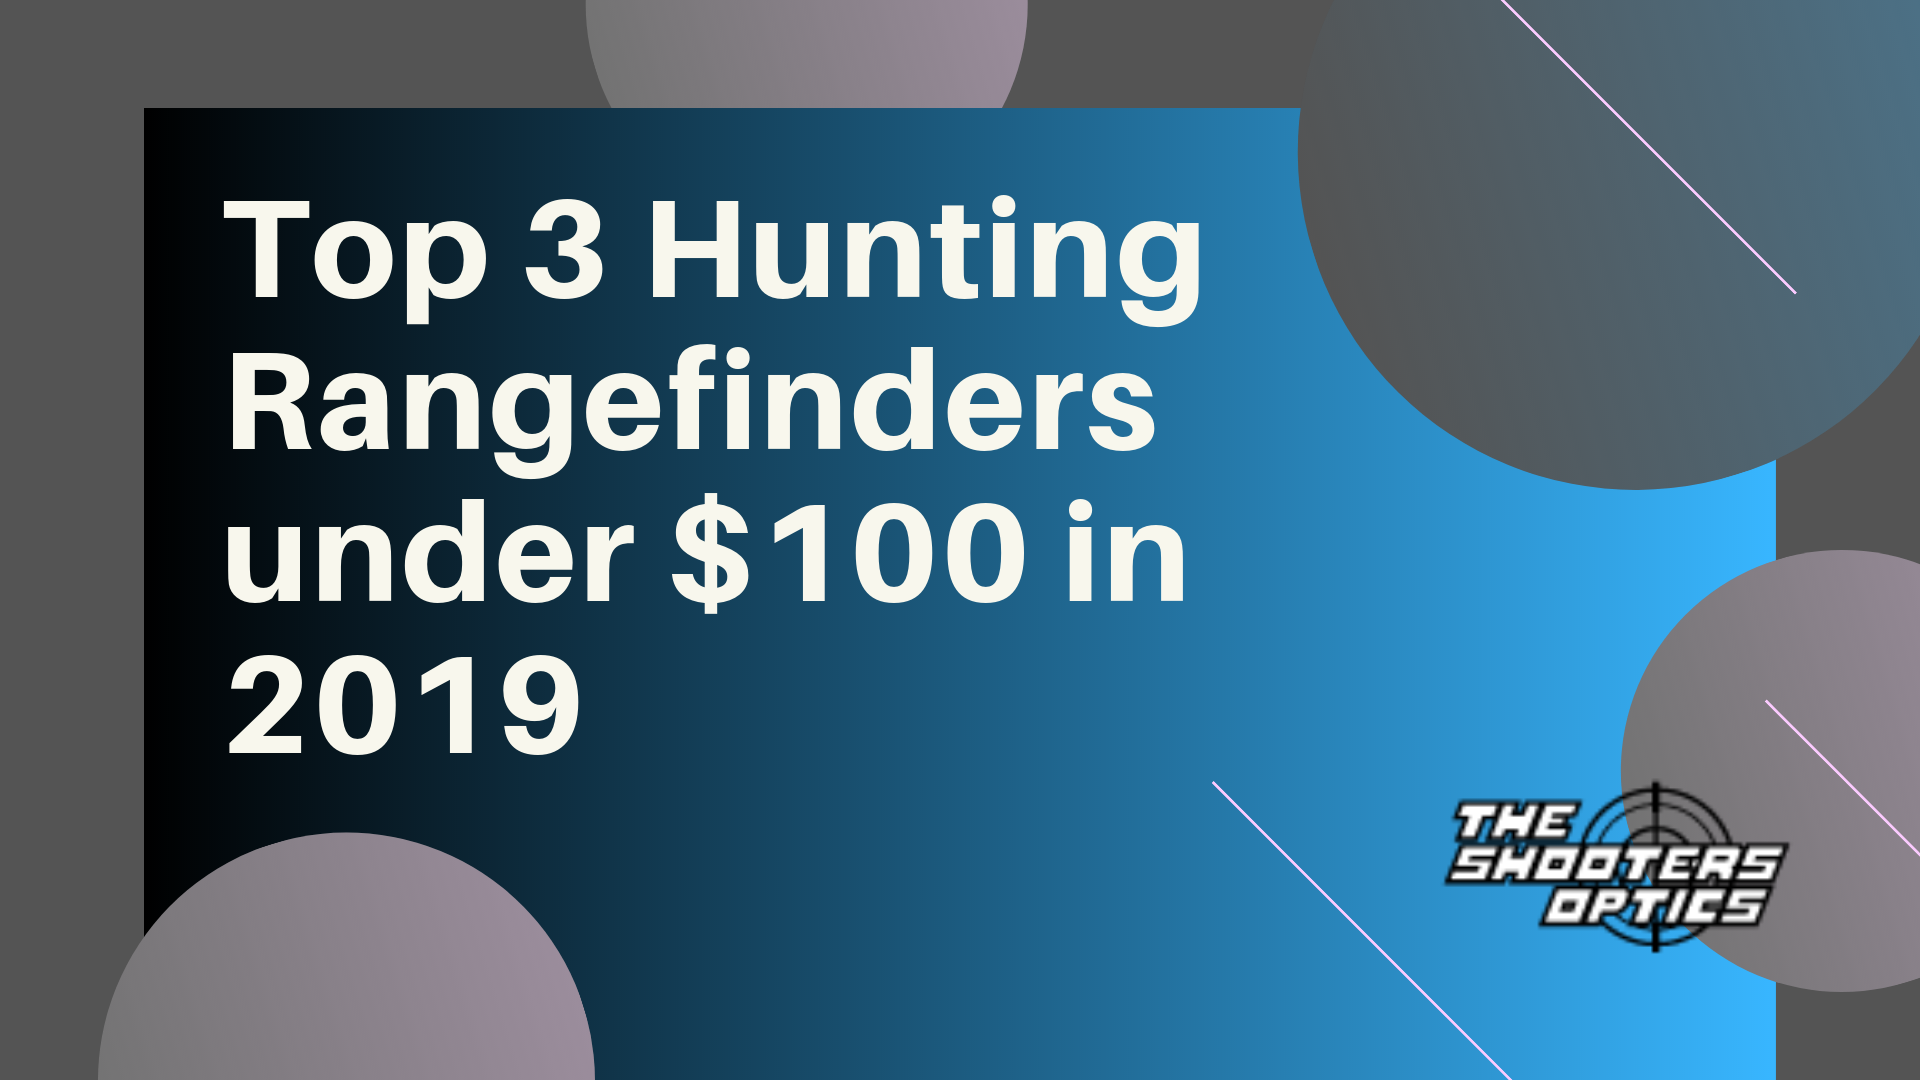 Top 3 Hunting Rangefinders under $100 in 2019